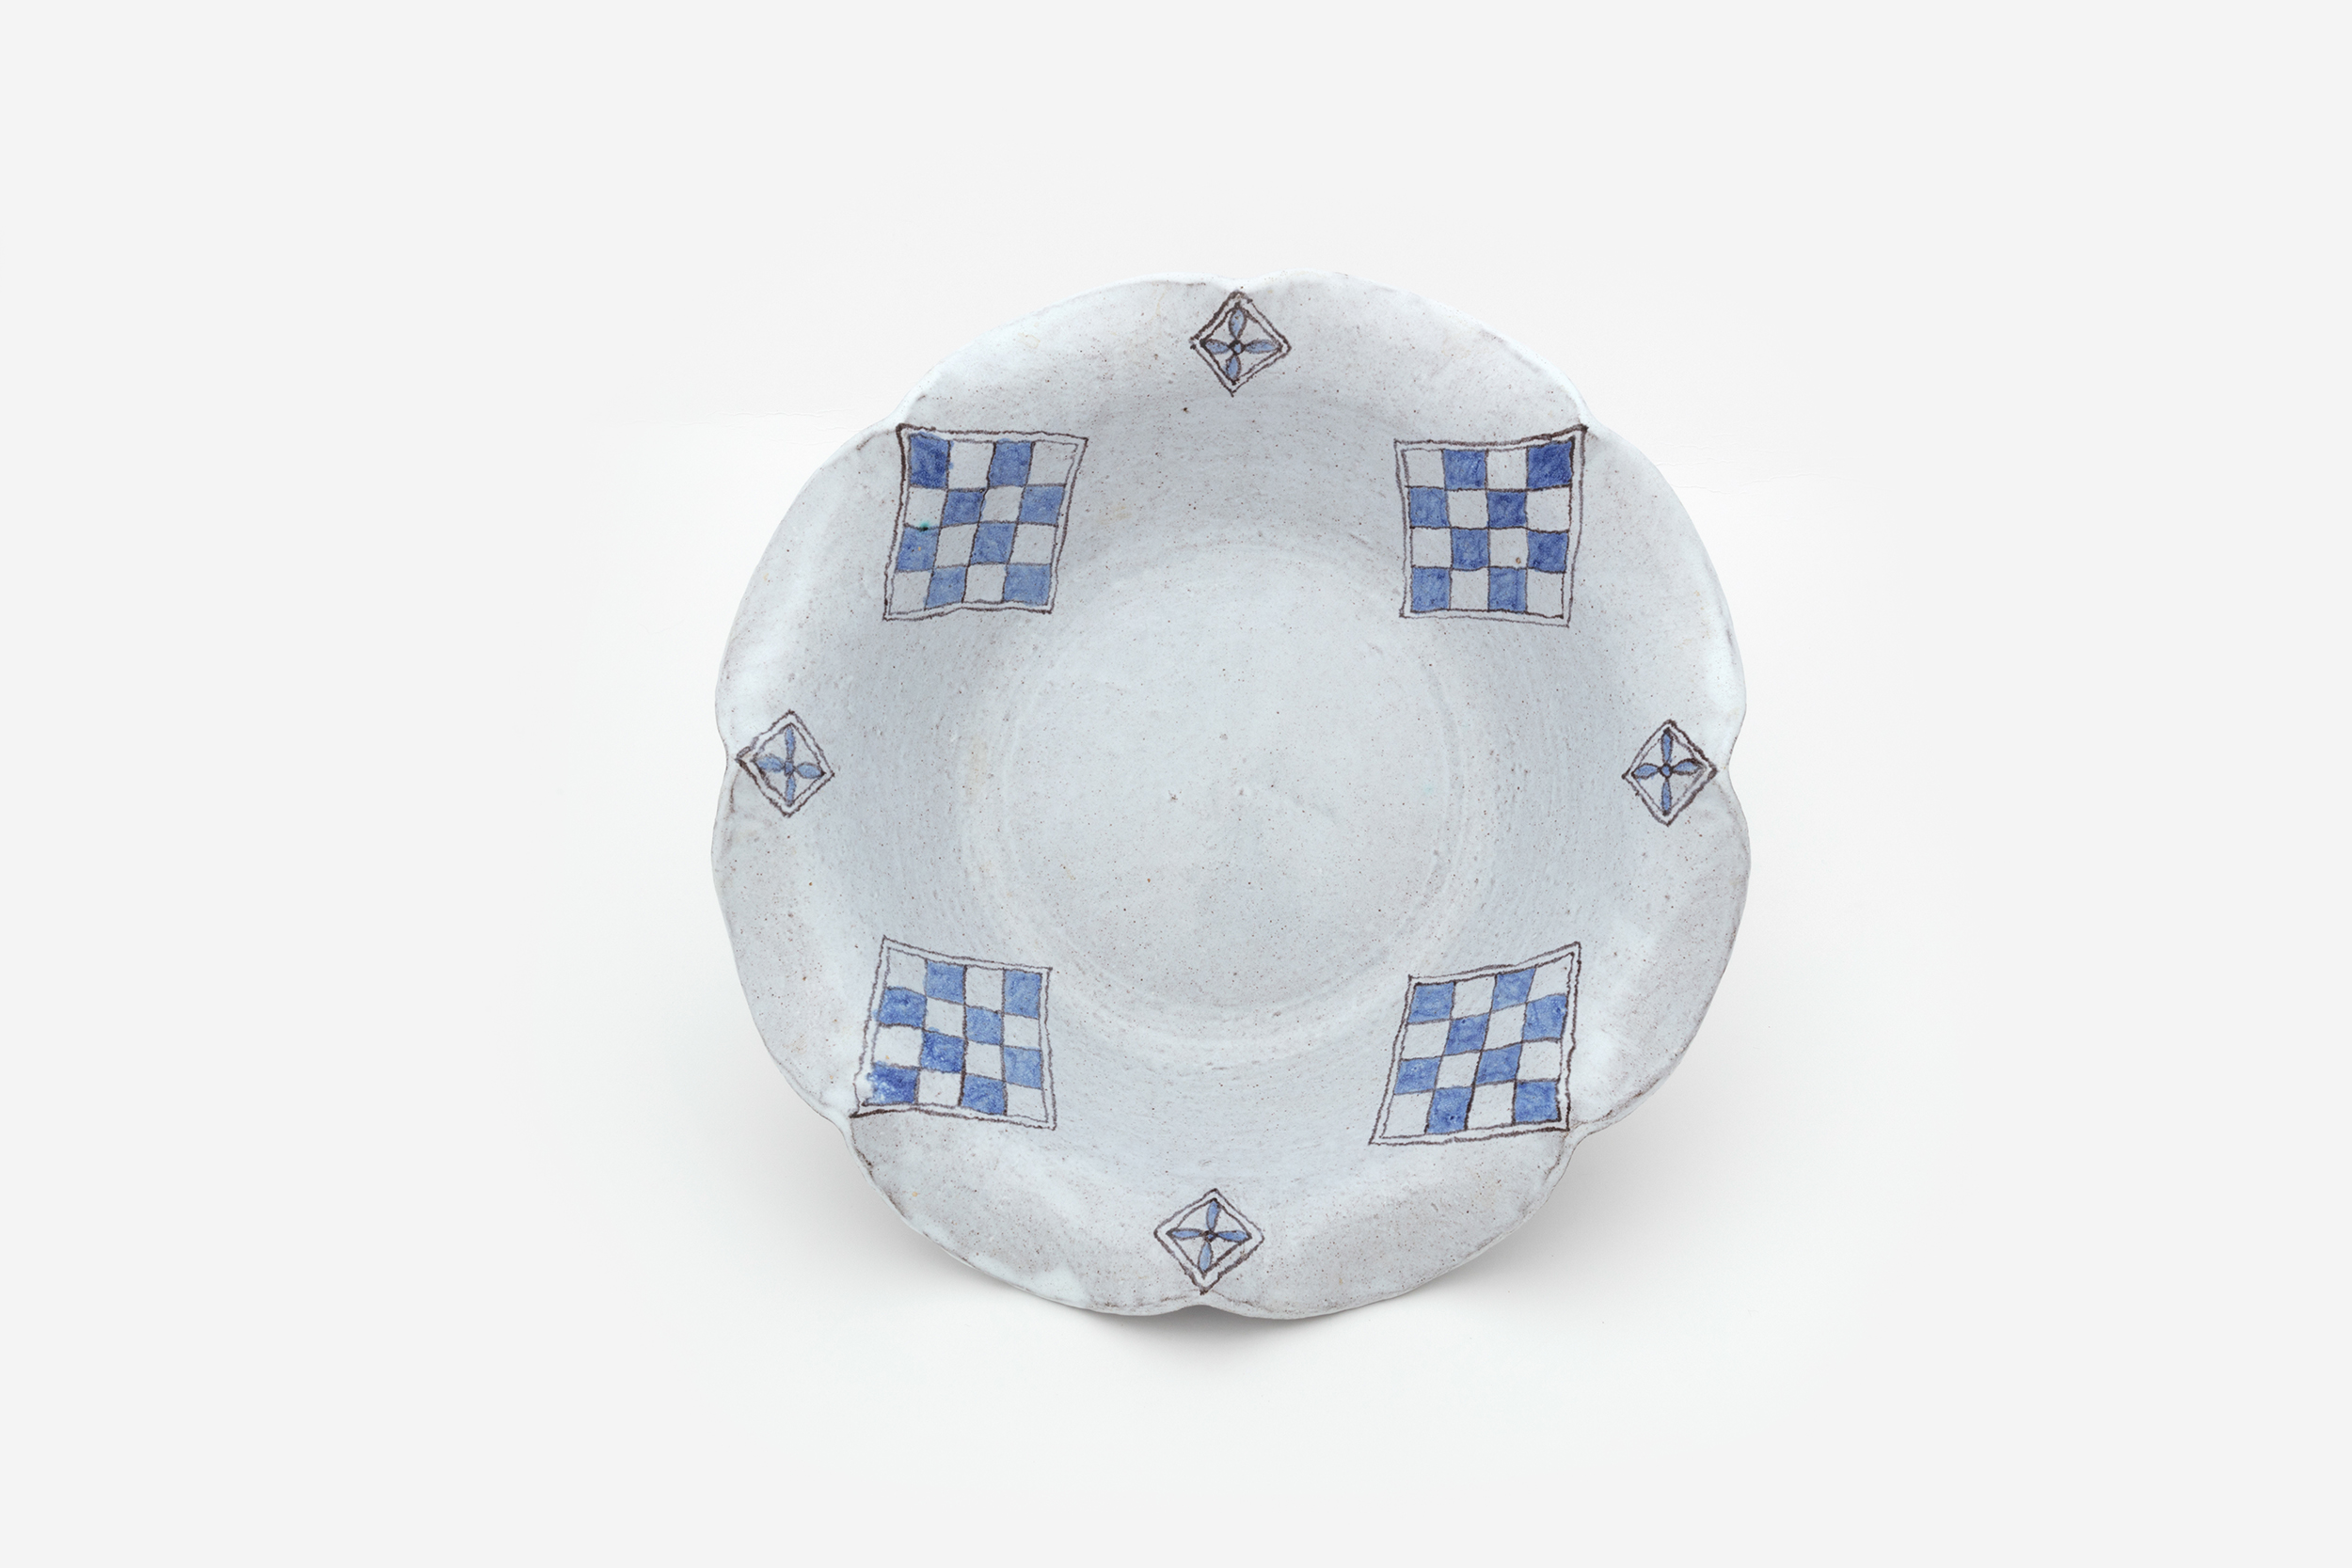 Hylton Nel - Blue and white checks bowl with folded rim, 7 September 1995